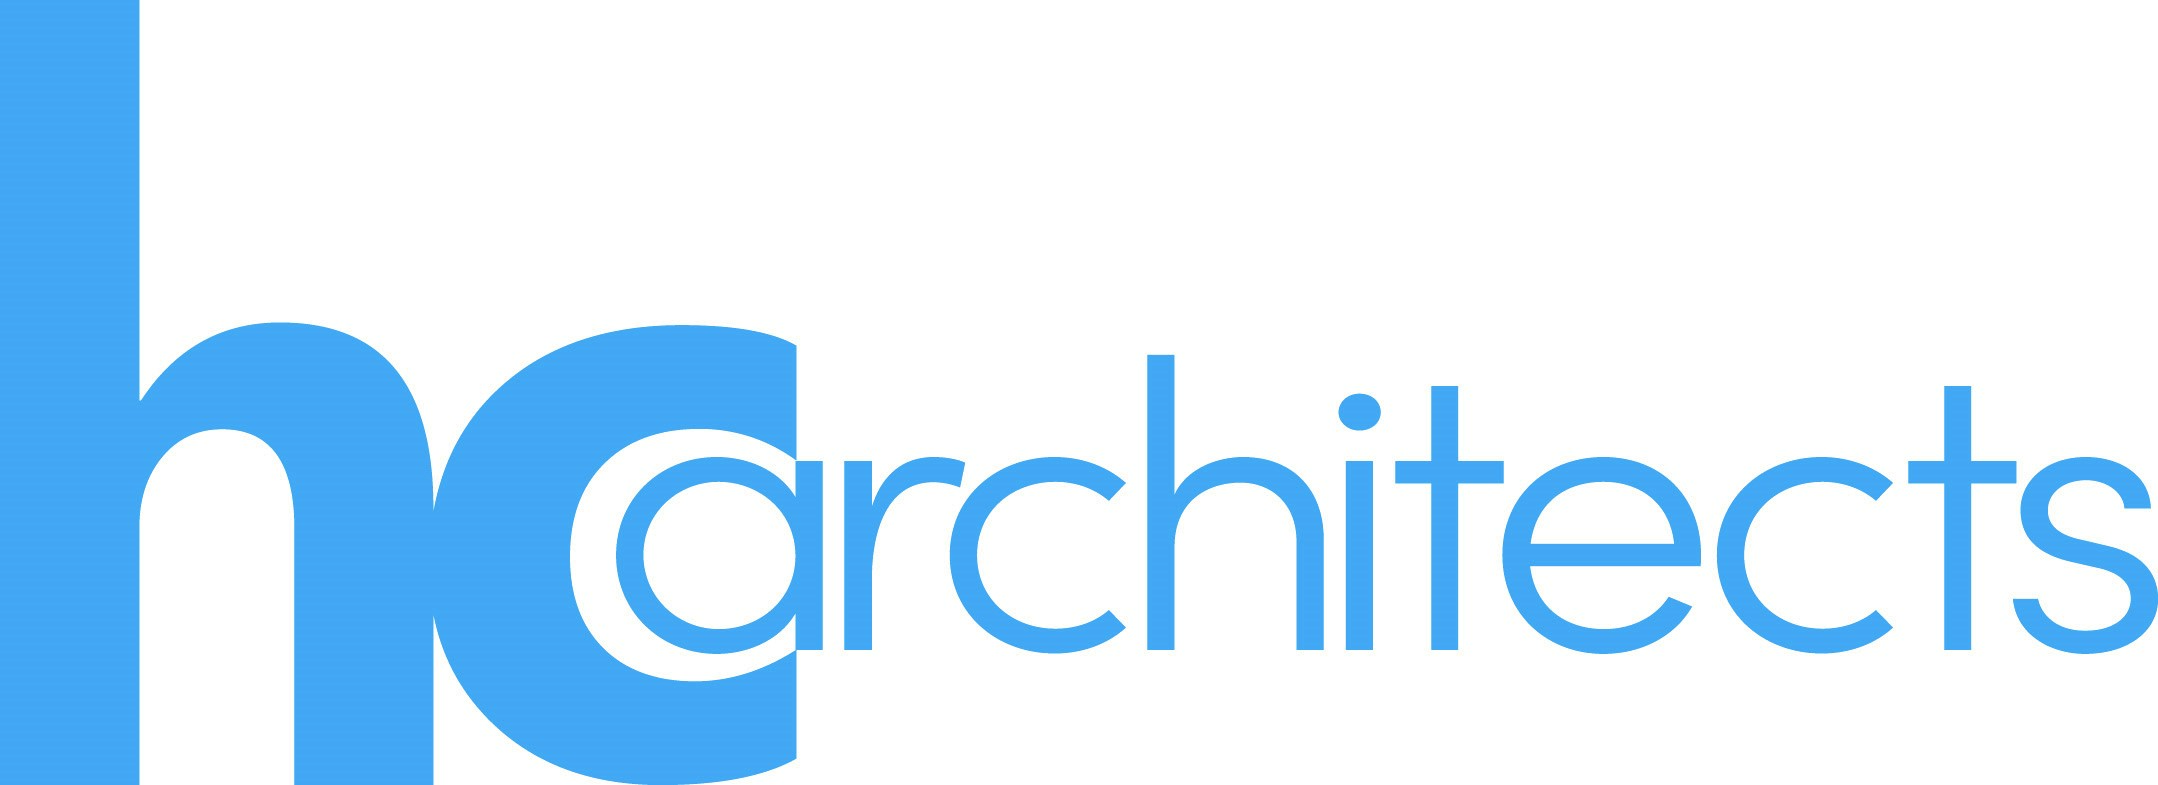 hc_architects_logo